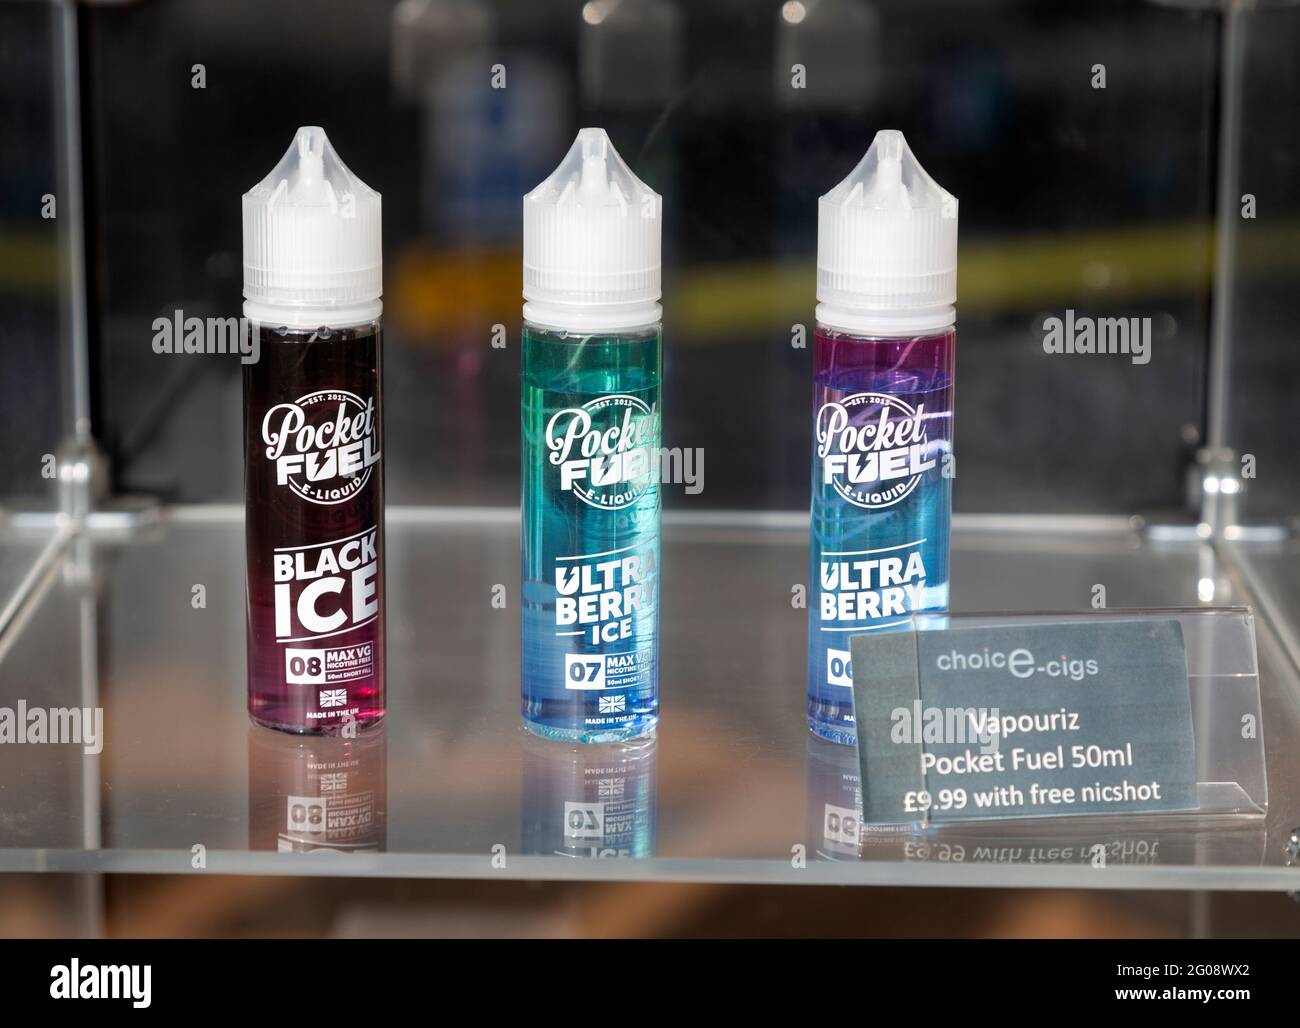 Vaporiz Pocket Fuel 50ml e-cig marques de la cartouche de nicotine dans vitrine de magasin, Royaume-Uni Banque D'Images